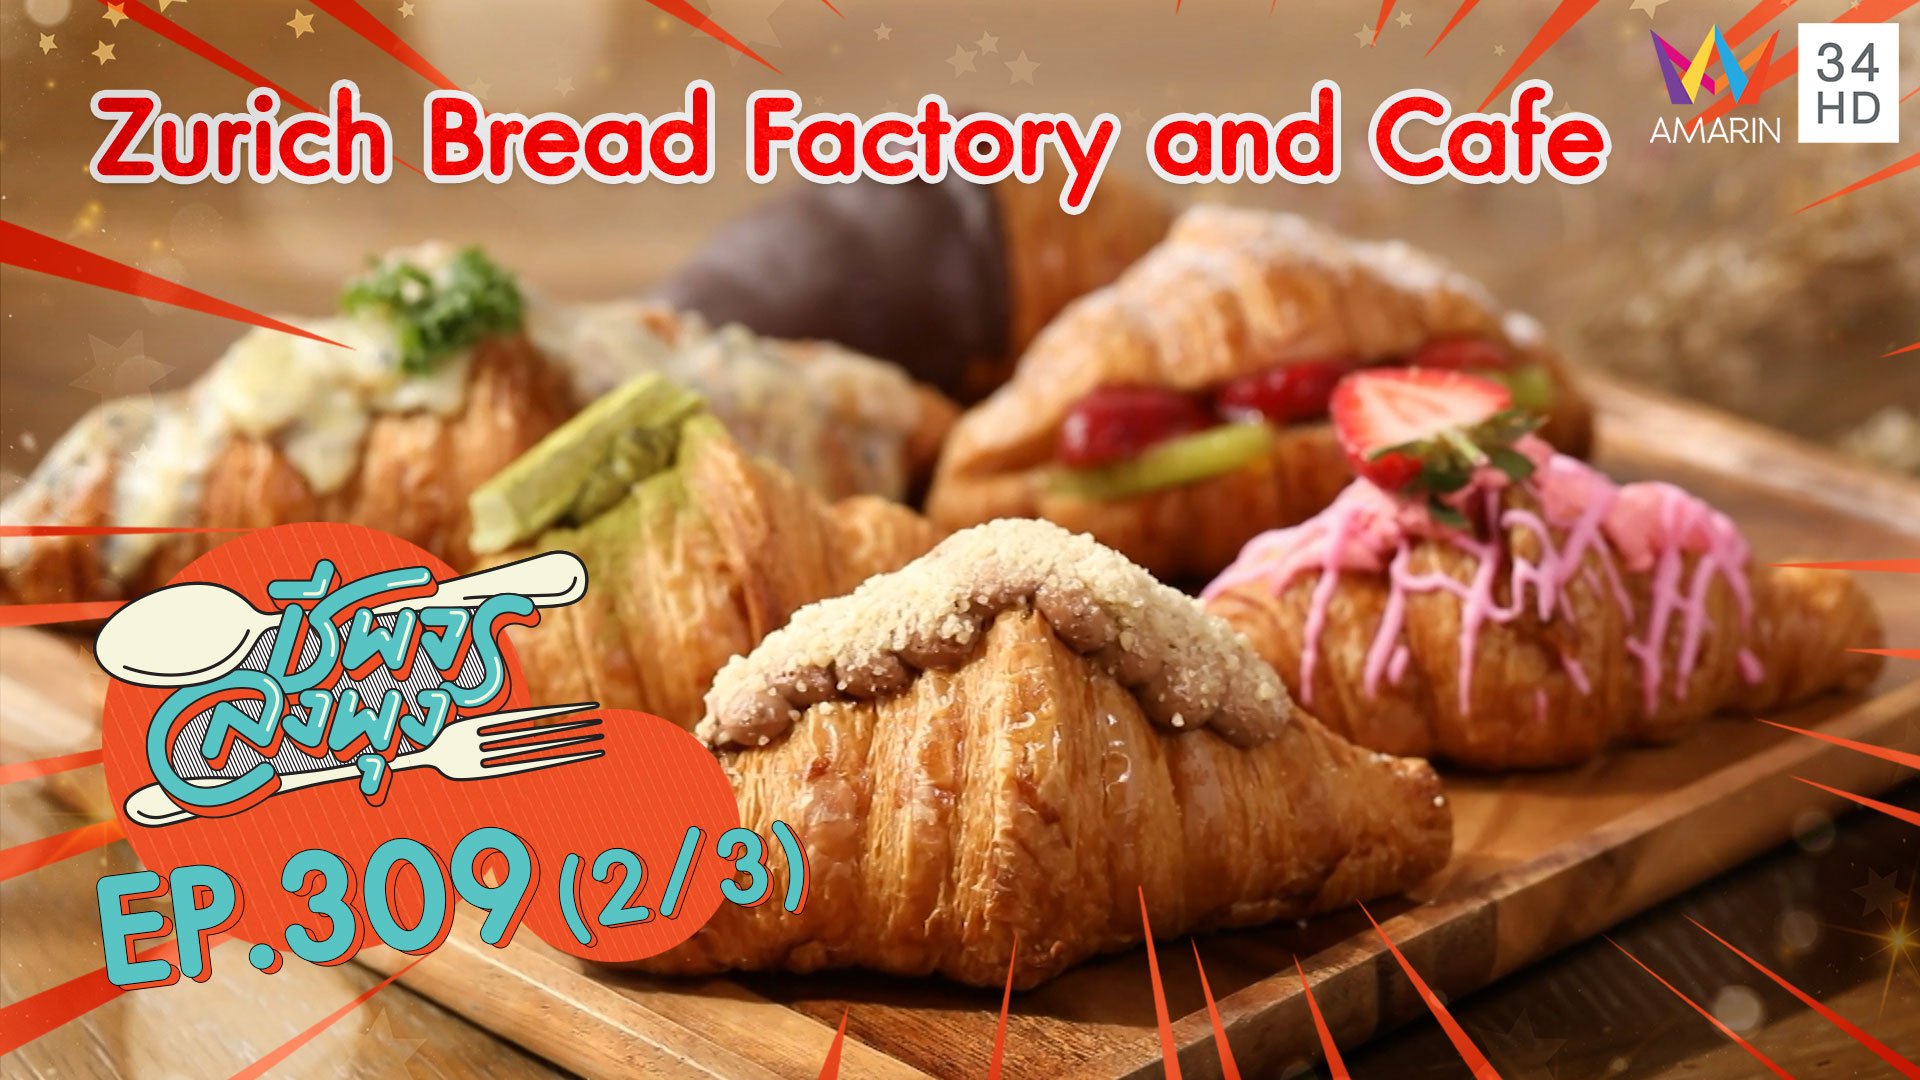 อาหารยุโรป รสชาติต้นตำรับ @ ร้าน Zurich Bread Factory and Cafe | ชีพจรลงพุง | 4 ก.ค. 64 (2/3) | AMARIN TVHD34